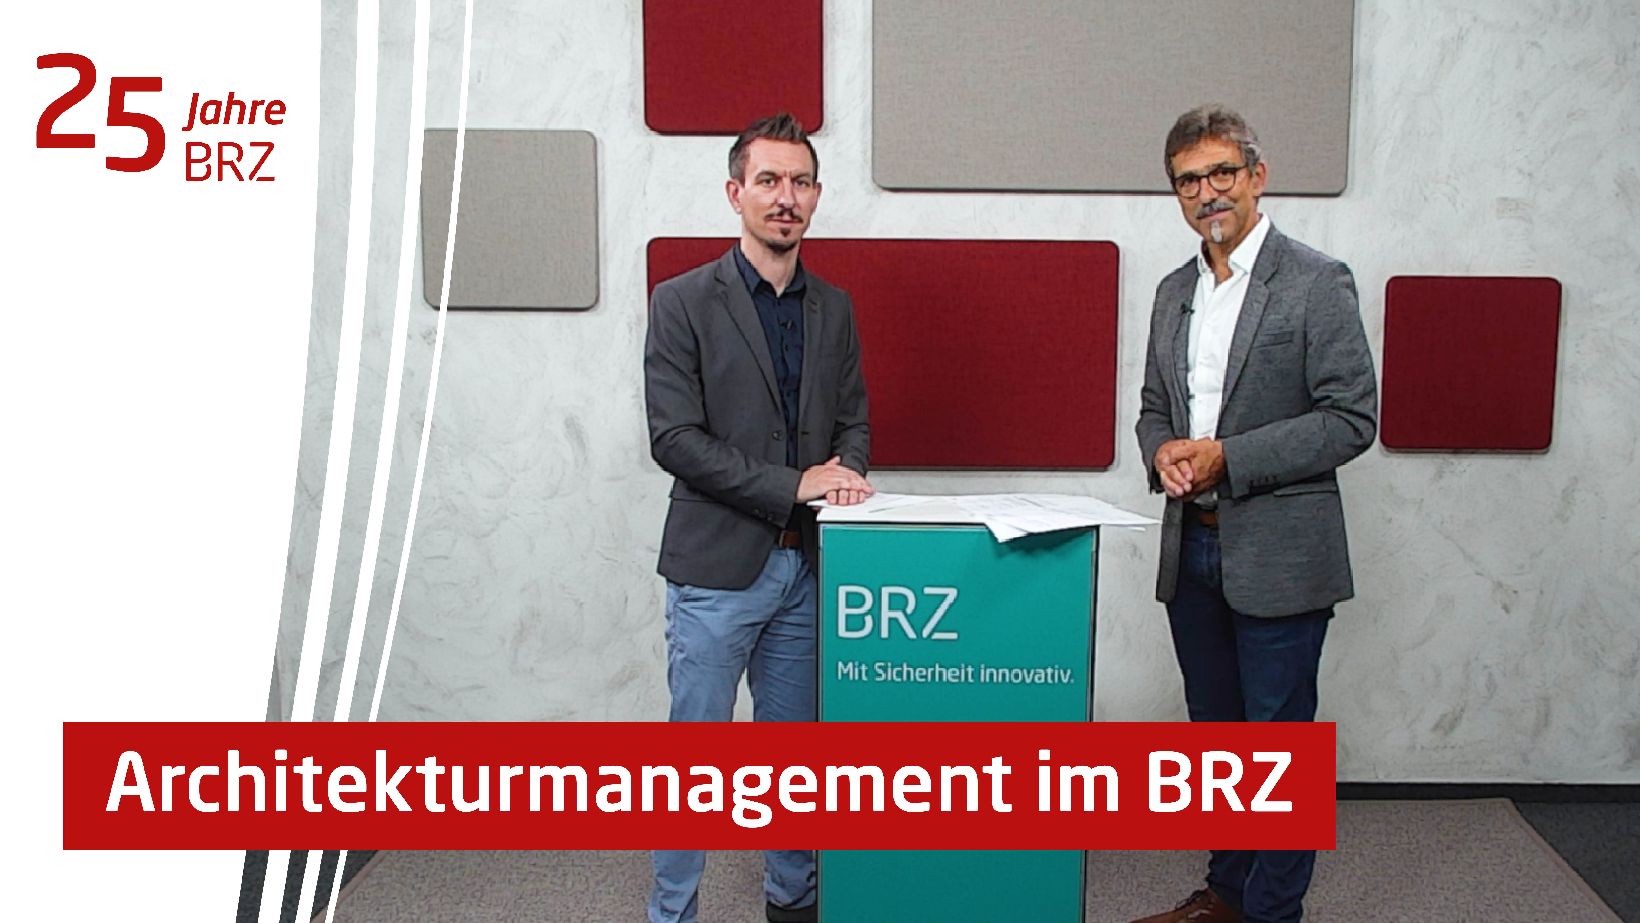 25 Jahre BRZ - Architekturmanagement im BRZ